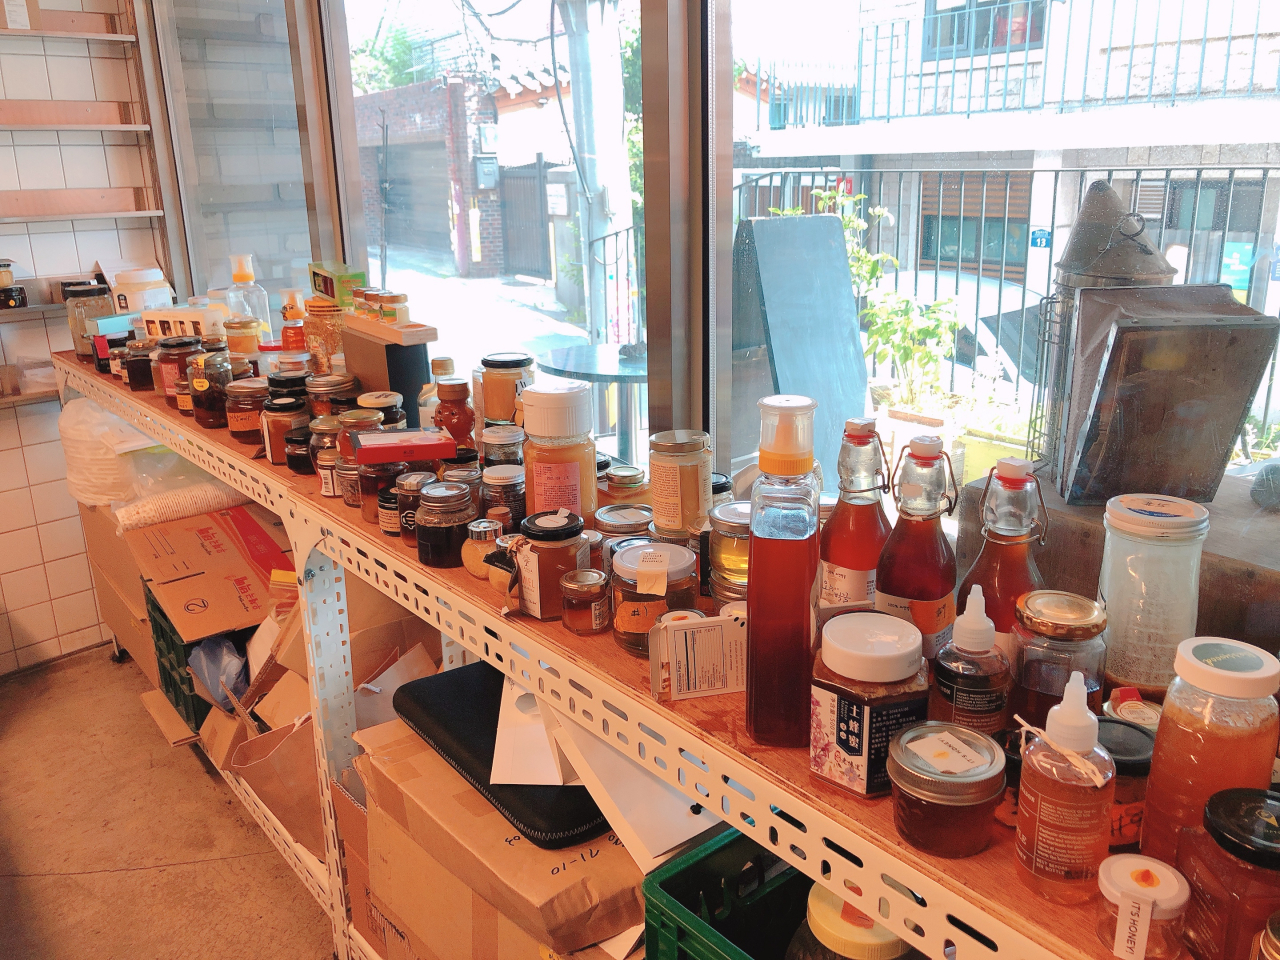 카페 메뉴를 통해 소개하고 있는 전 세계 다양한 꿀들.